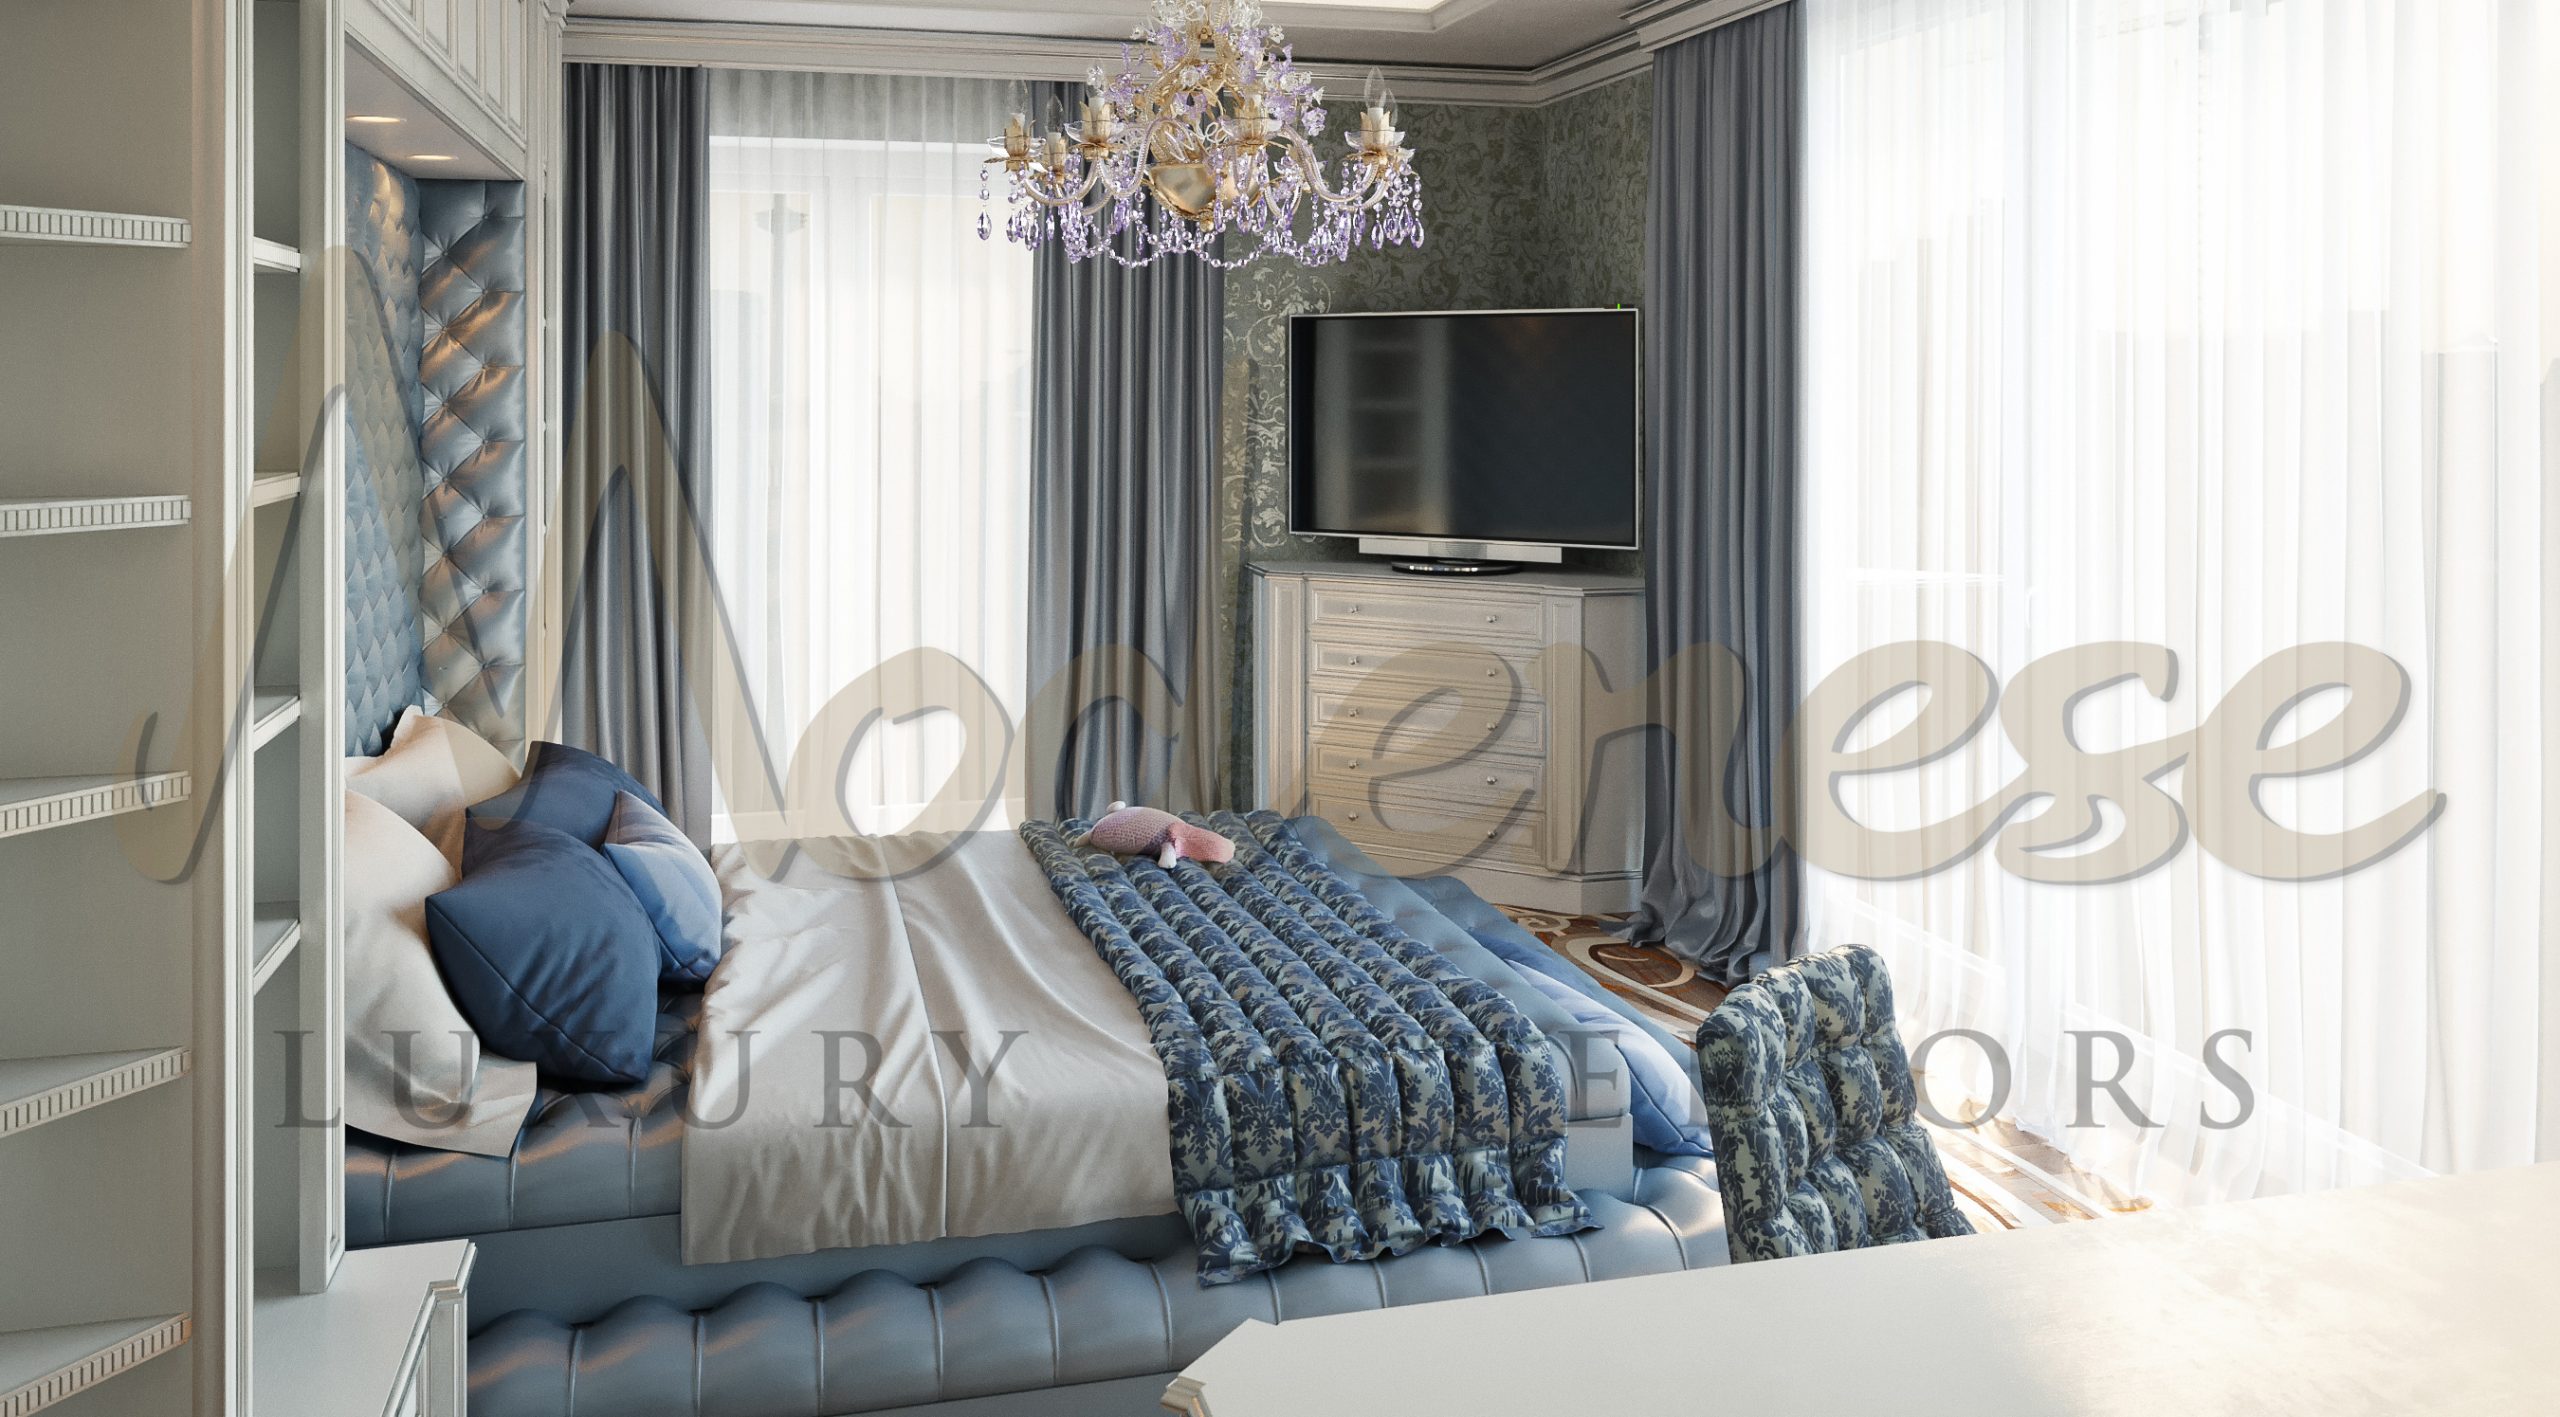 Conception de chambres modernes pour une villa luxueuse à Monaco, France